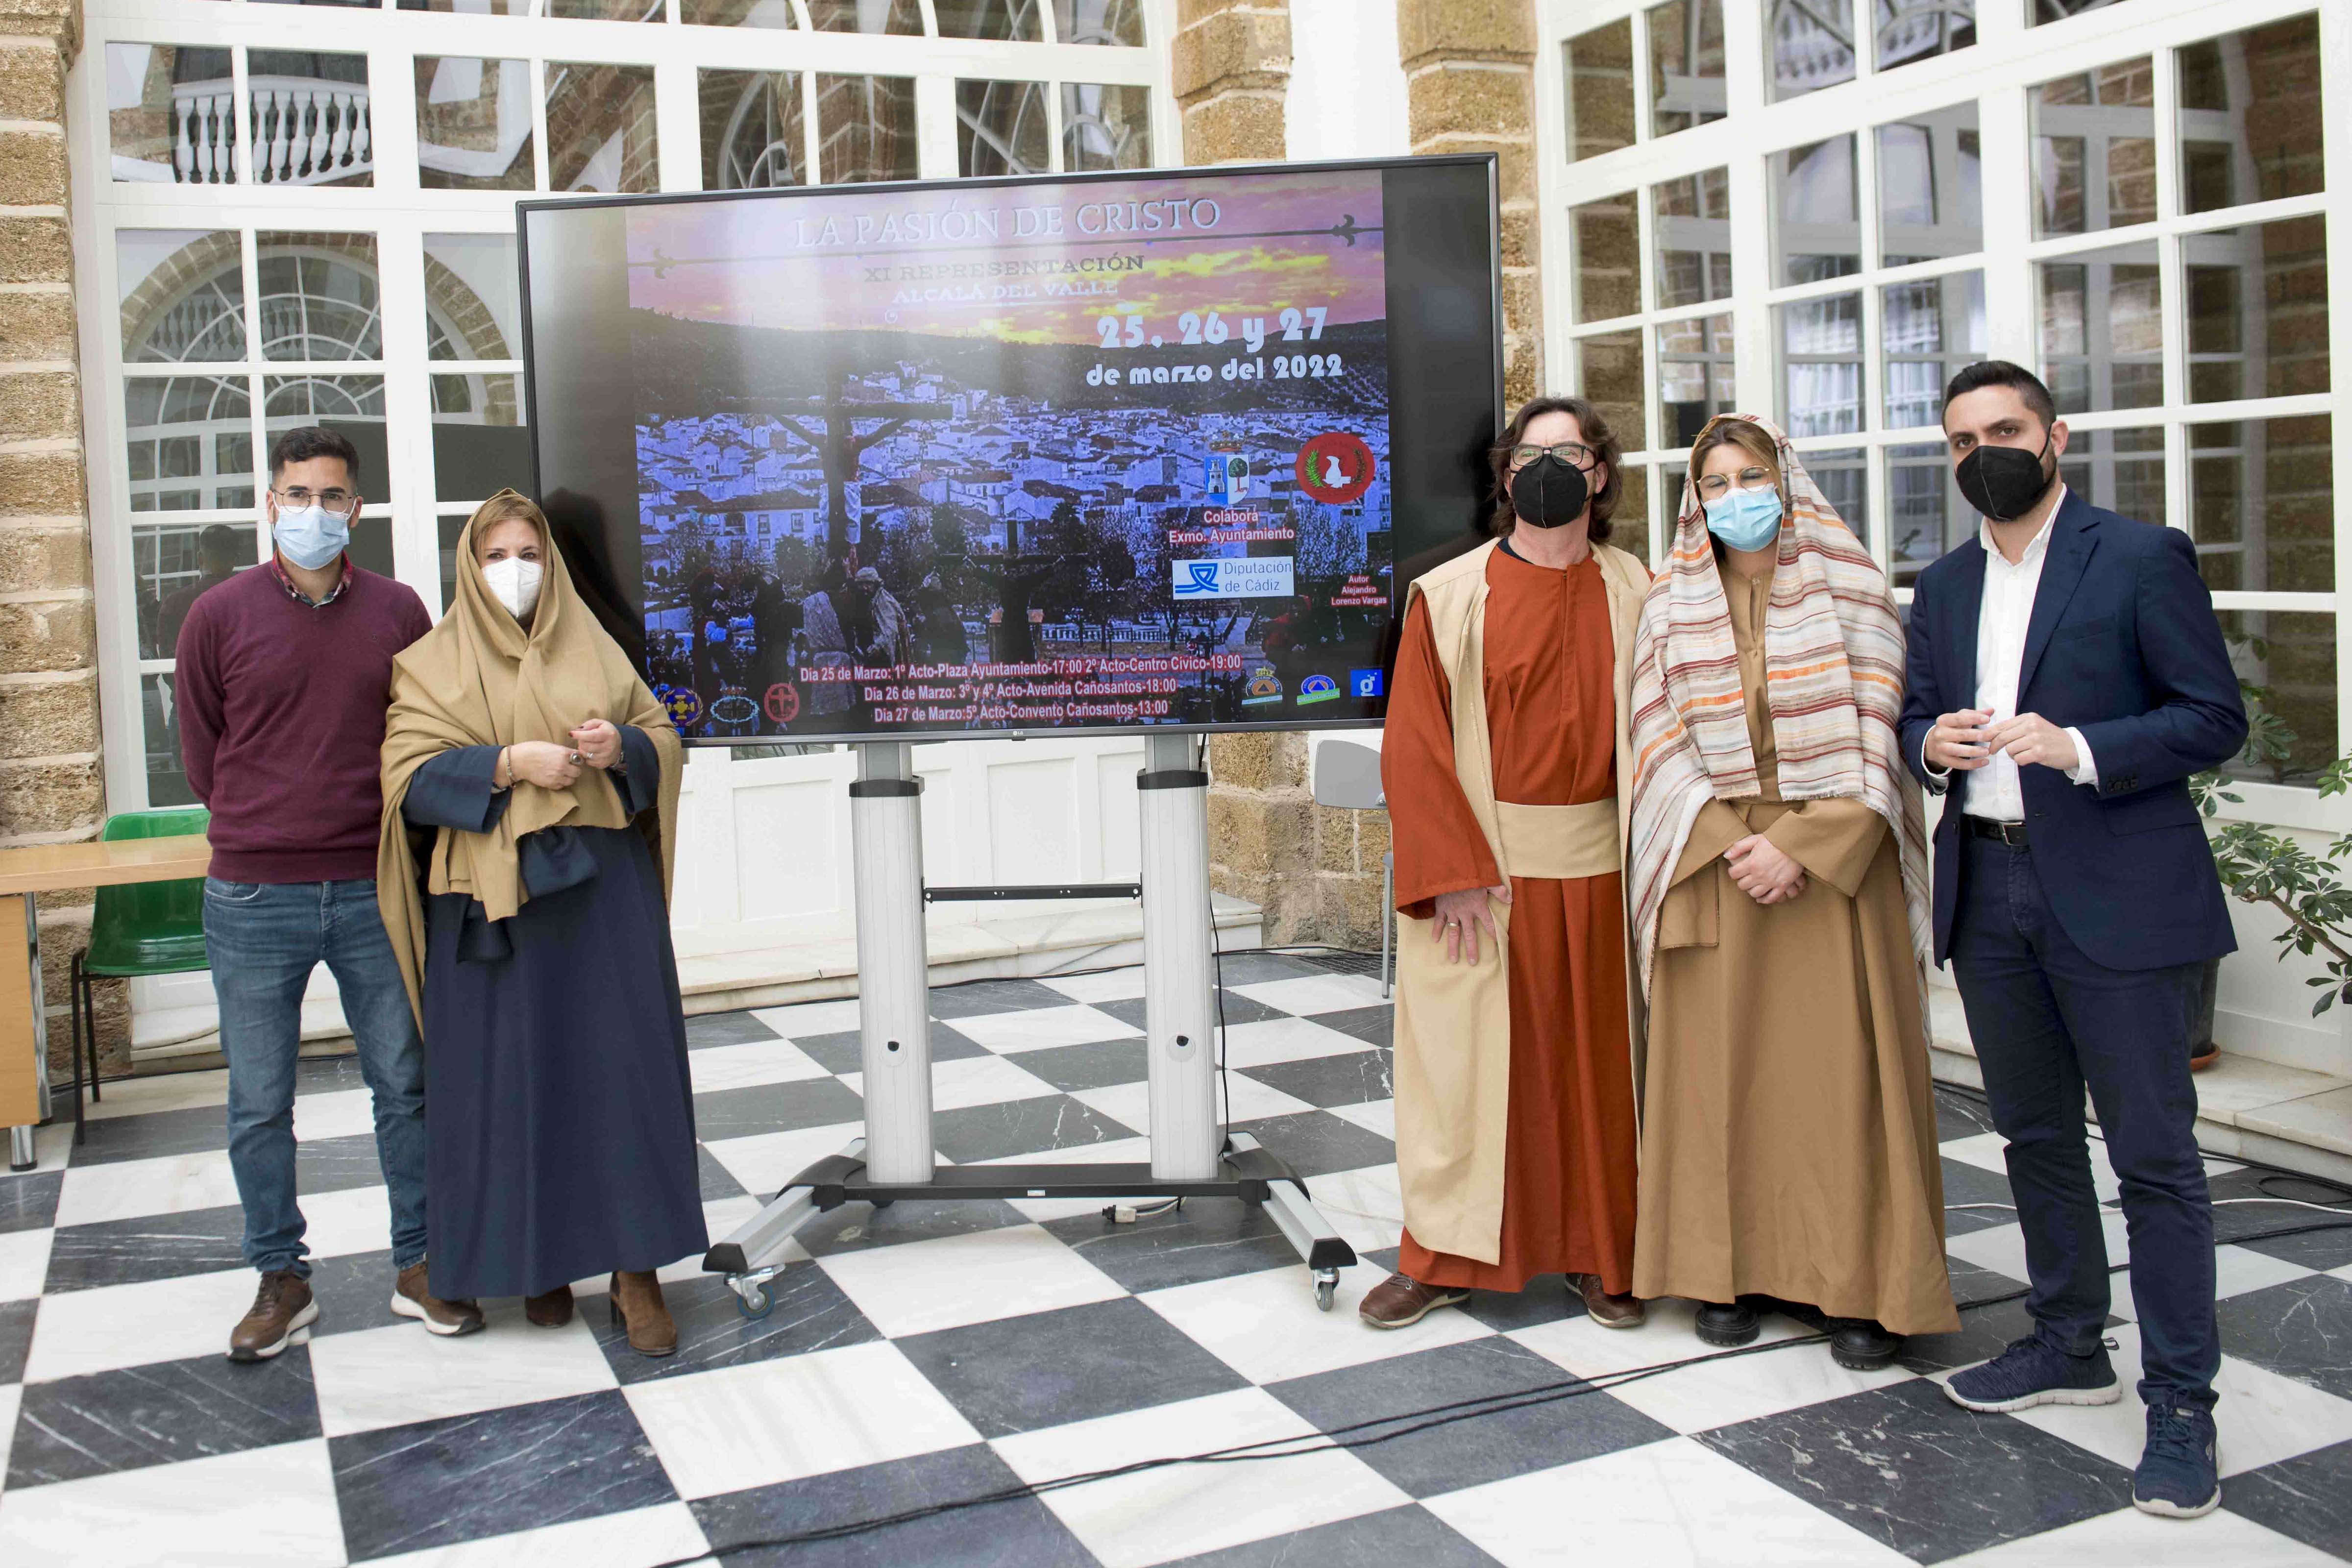 Presentación de los actos sobre la Pasión de Cristo que tendrán lugar en Alcalá del Valle 